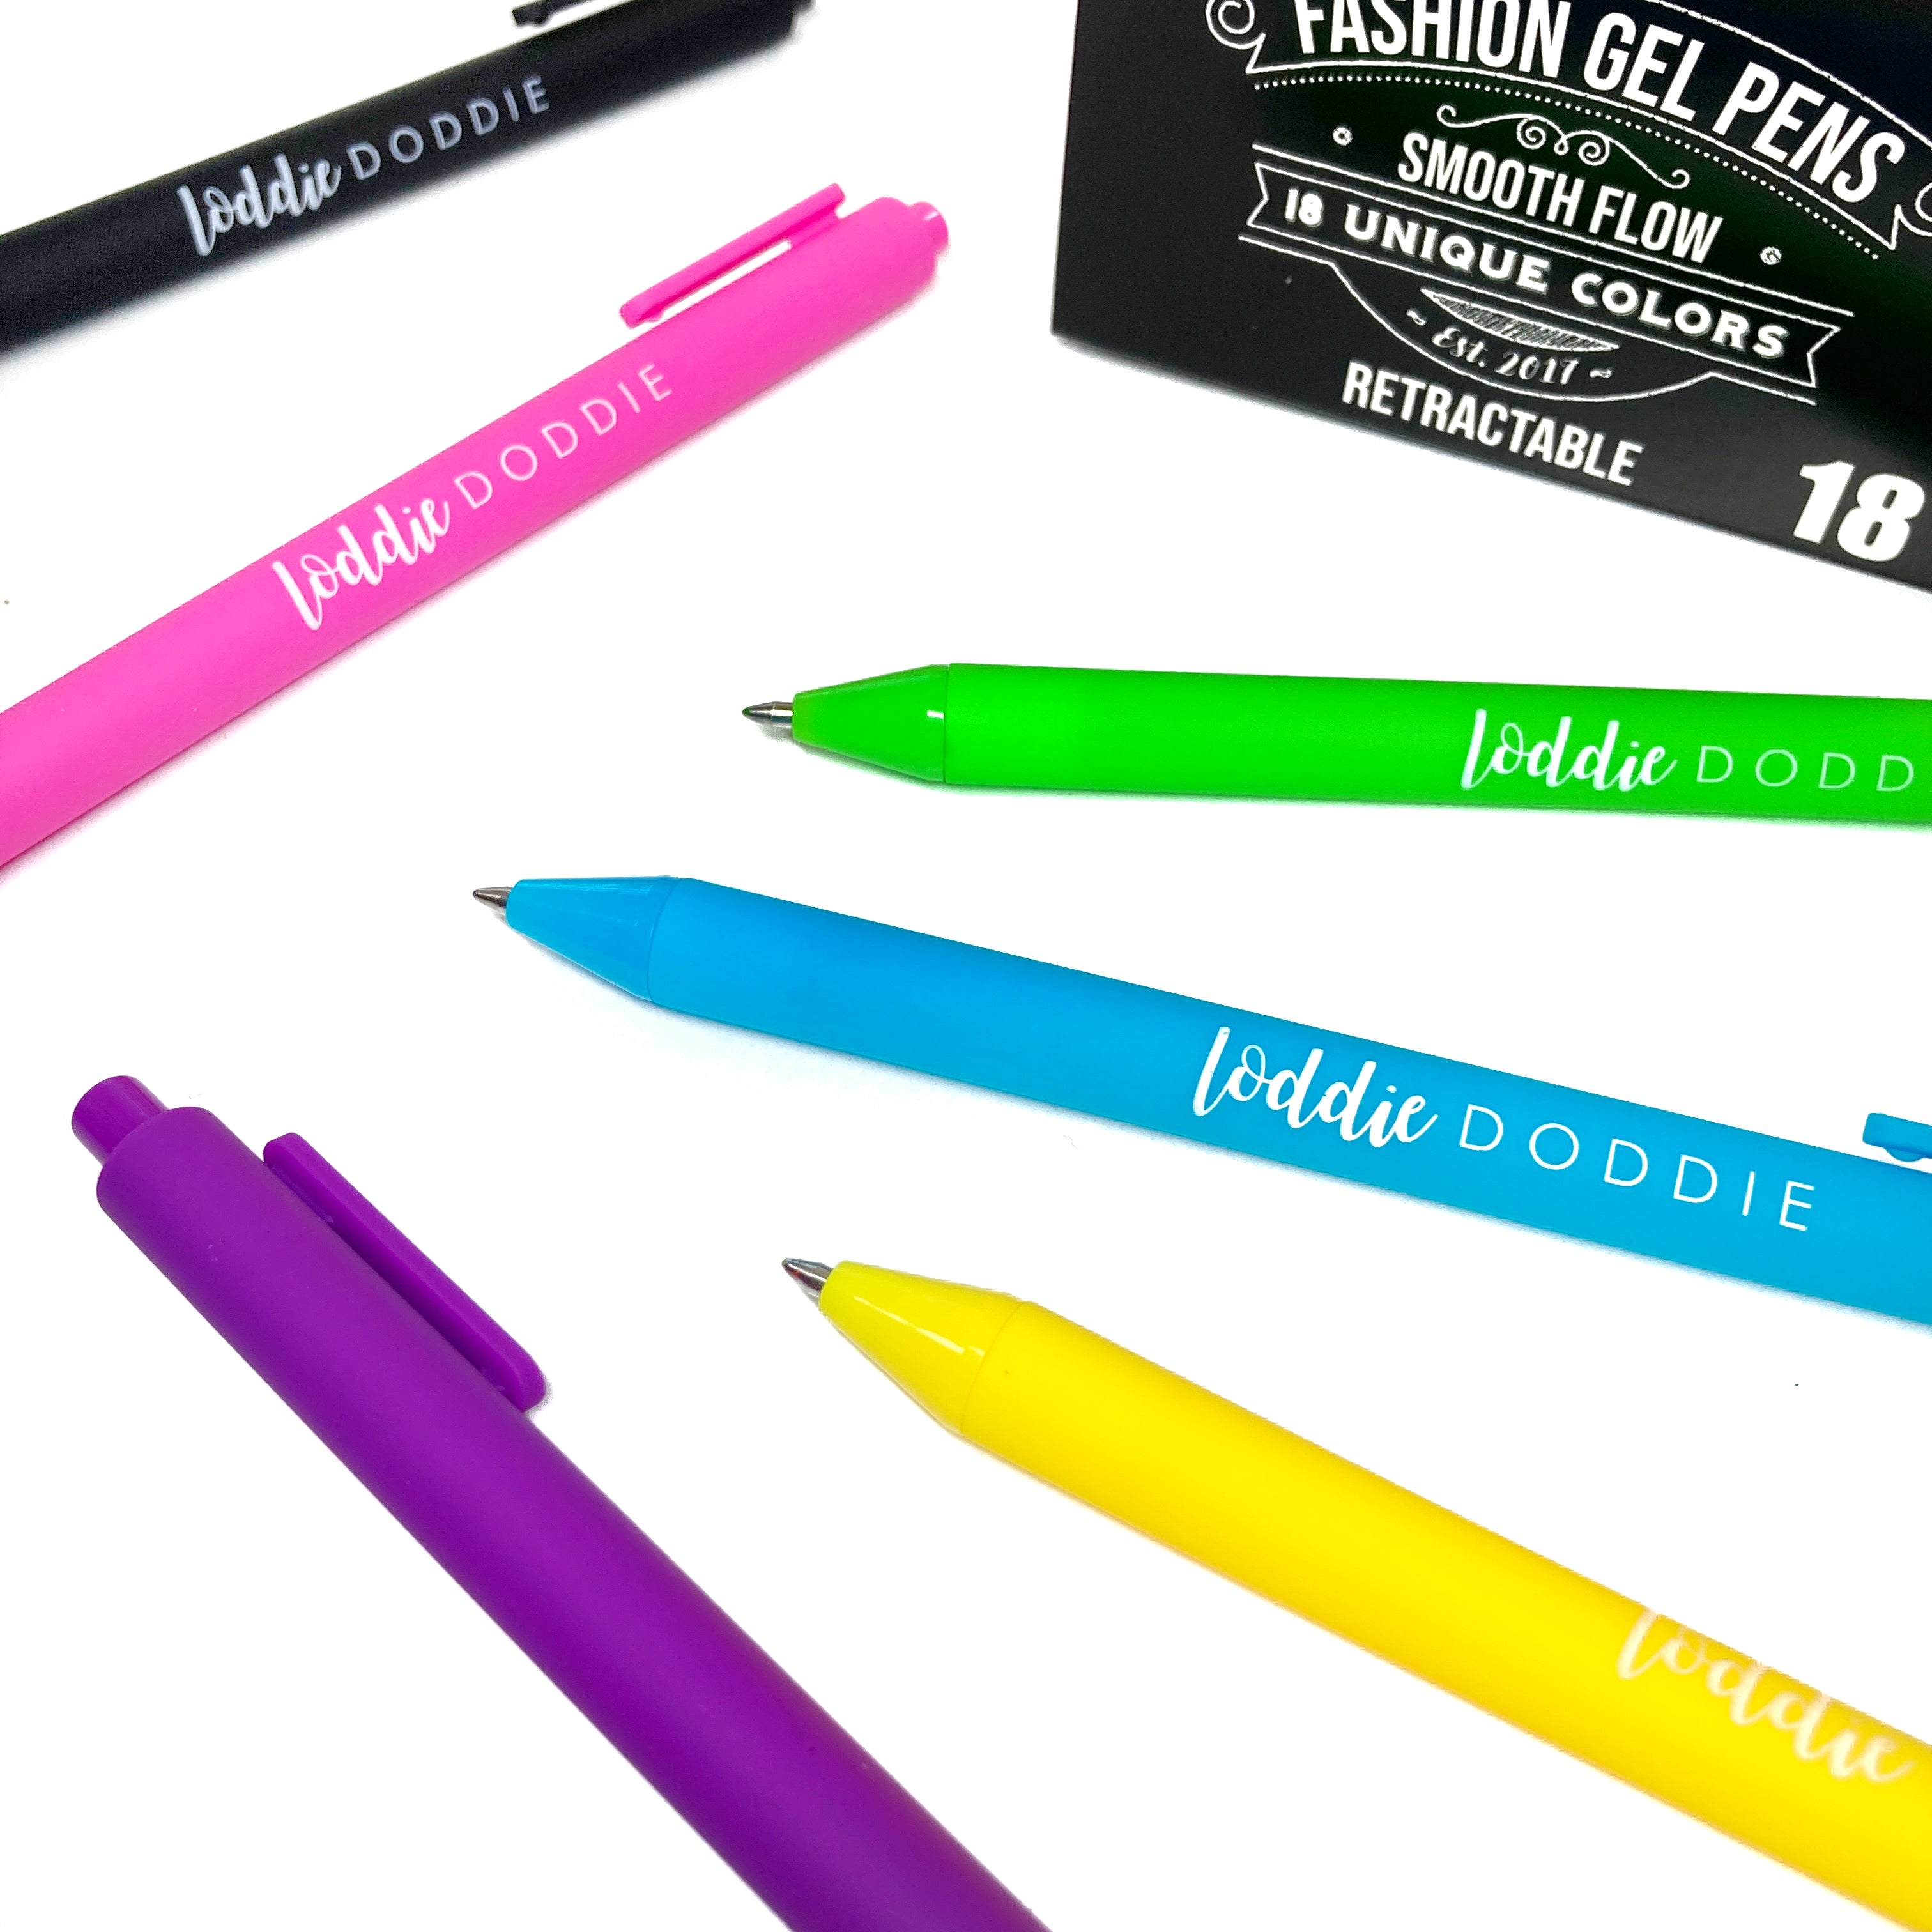 Loddie Doddie RNAB0B627WQF3 loddie doddie colored gel pens for note taking,  ballpoint ink gel pens with 1mm tip, 24-pack colored pens in 6 neon,  metallic